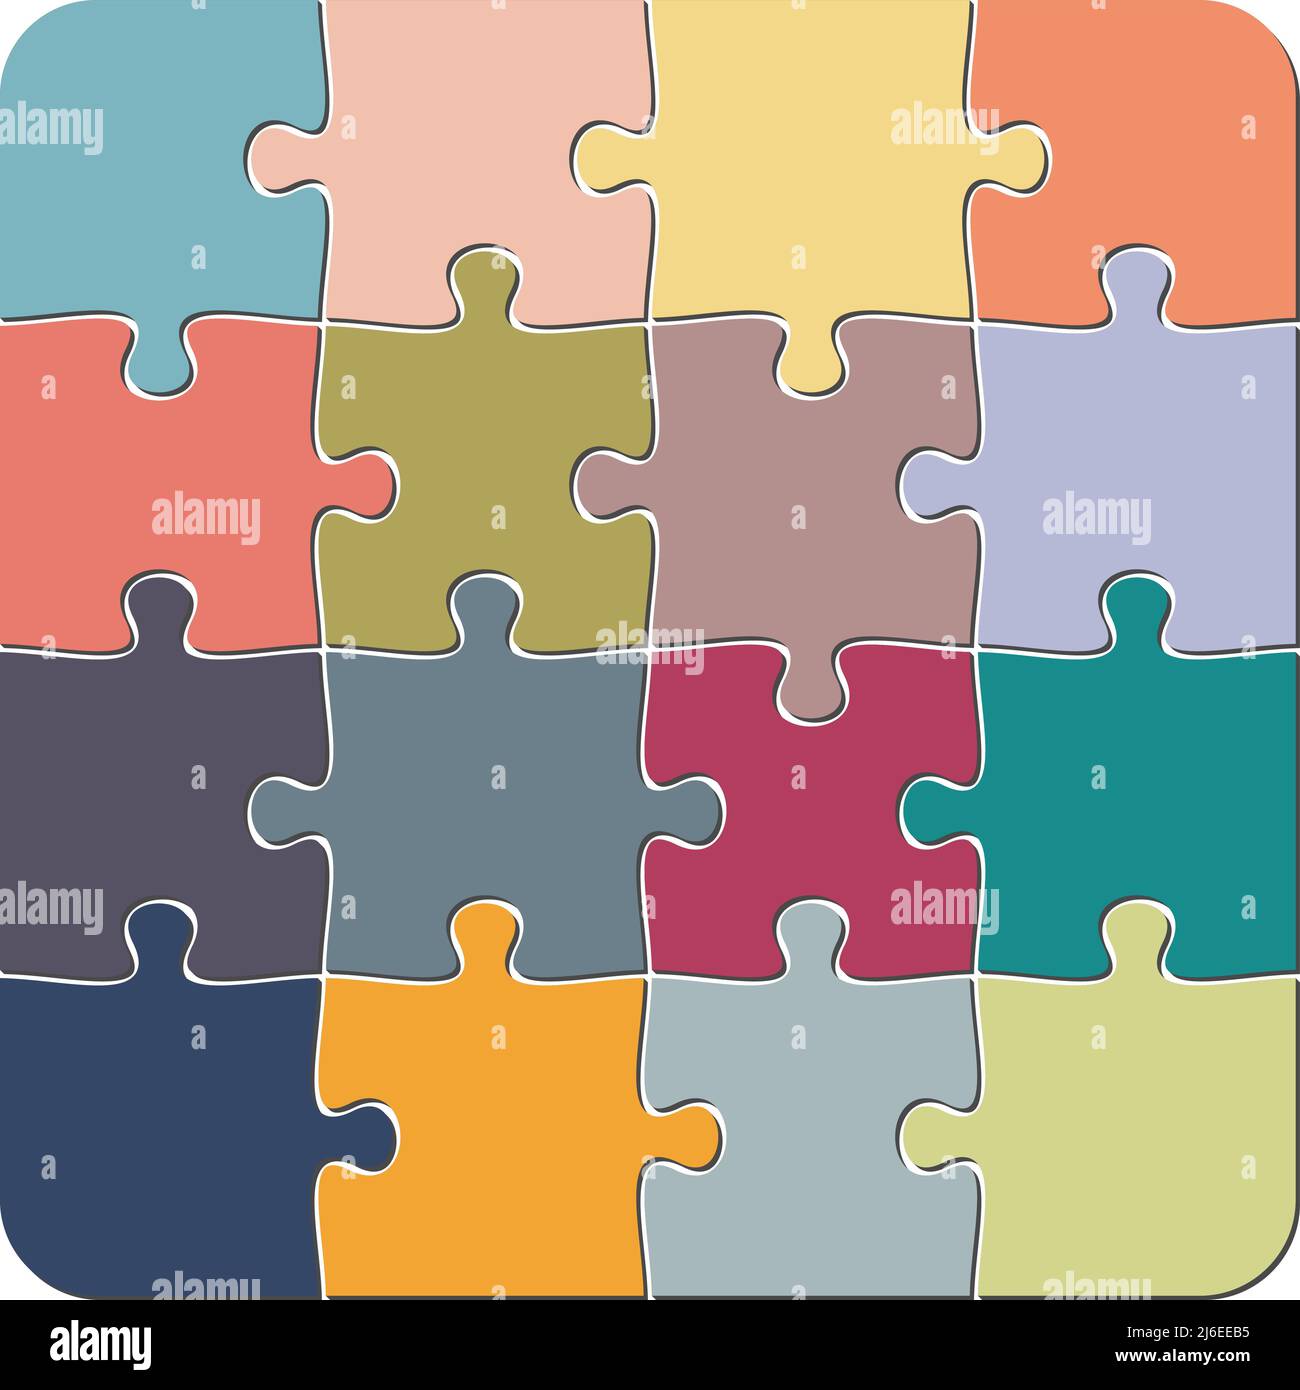 modello puzzle colorato 4 x 4, illustrazione vettoriale isolata su sfondo bianco Illustrazione Vettoriale